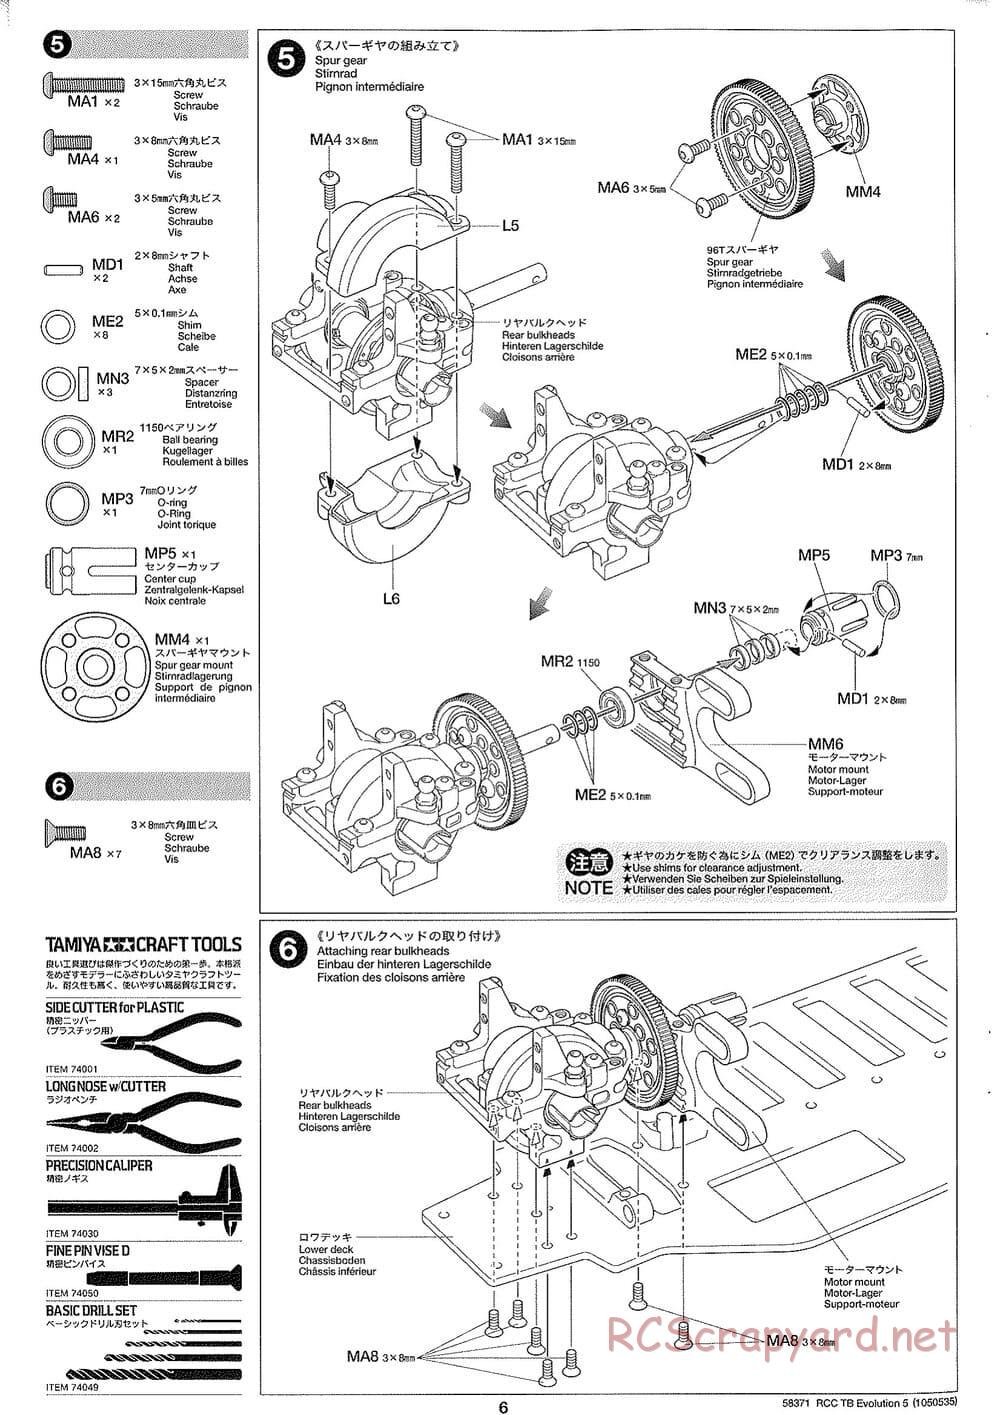 Tamiya - TB Evolution V Chassis - Manual - Page 6